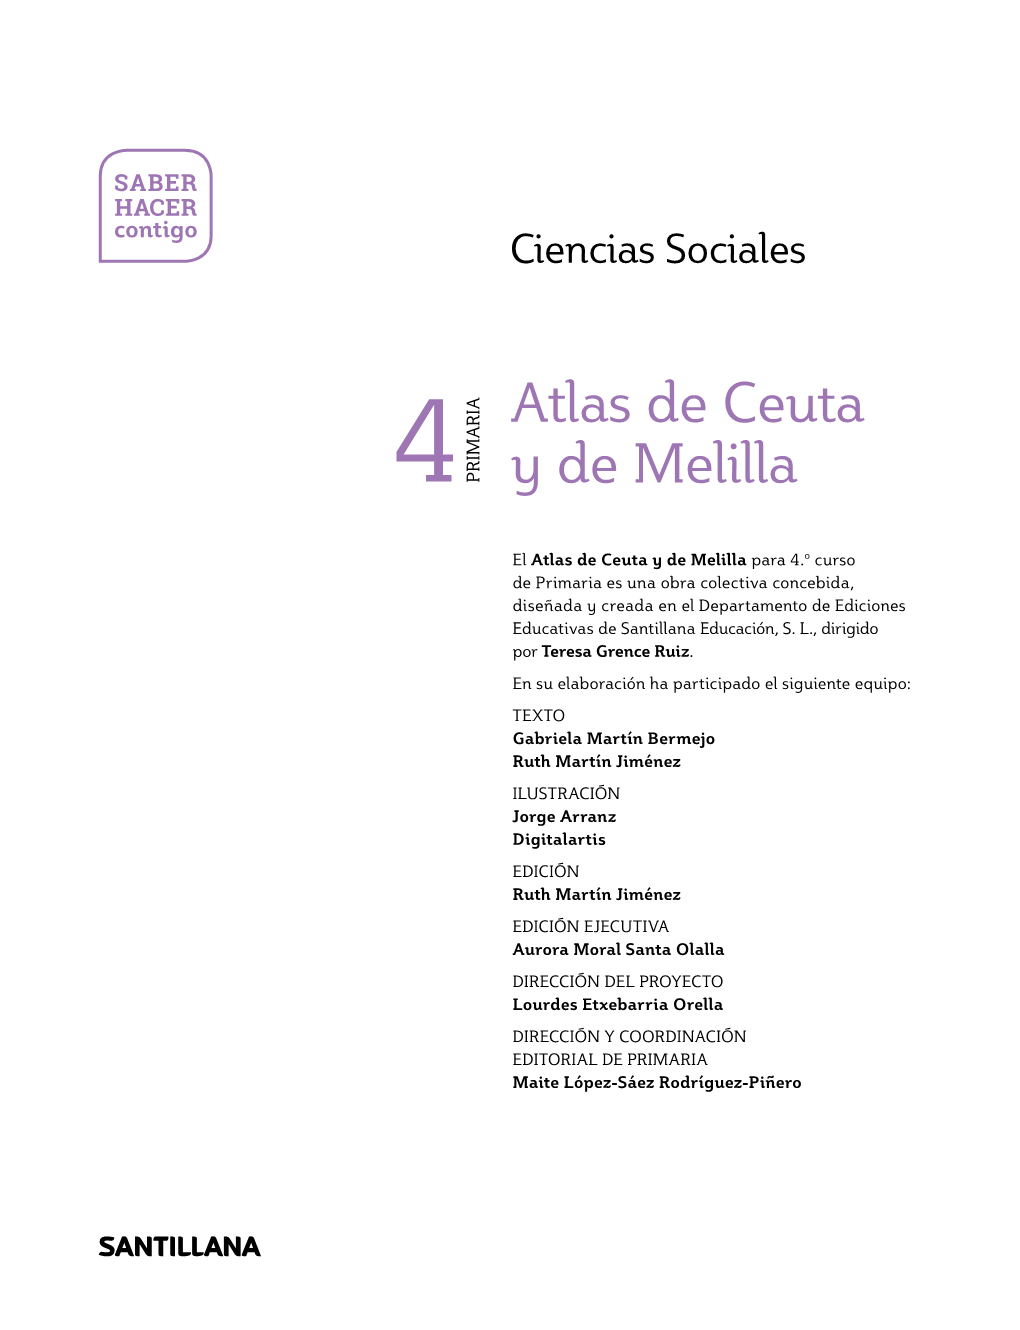 4 Atlas De Ceuta Y De Melilla